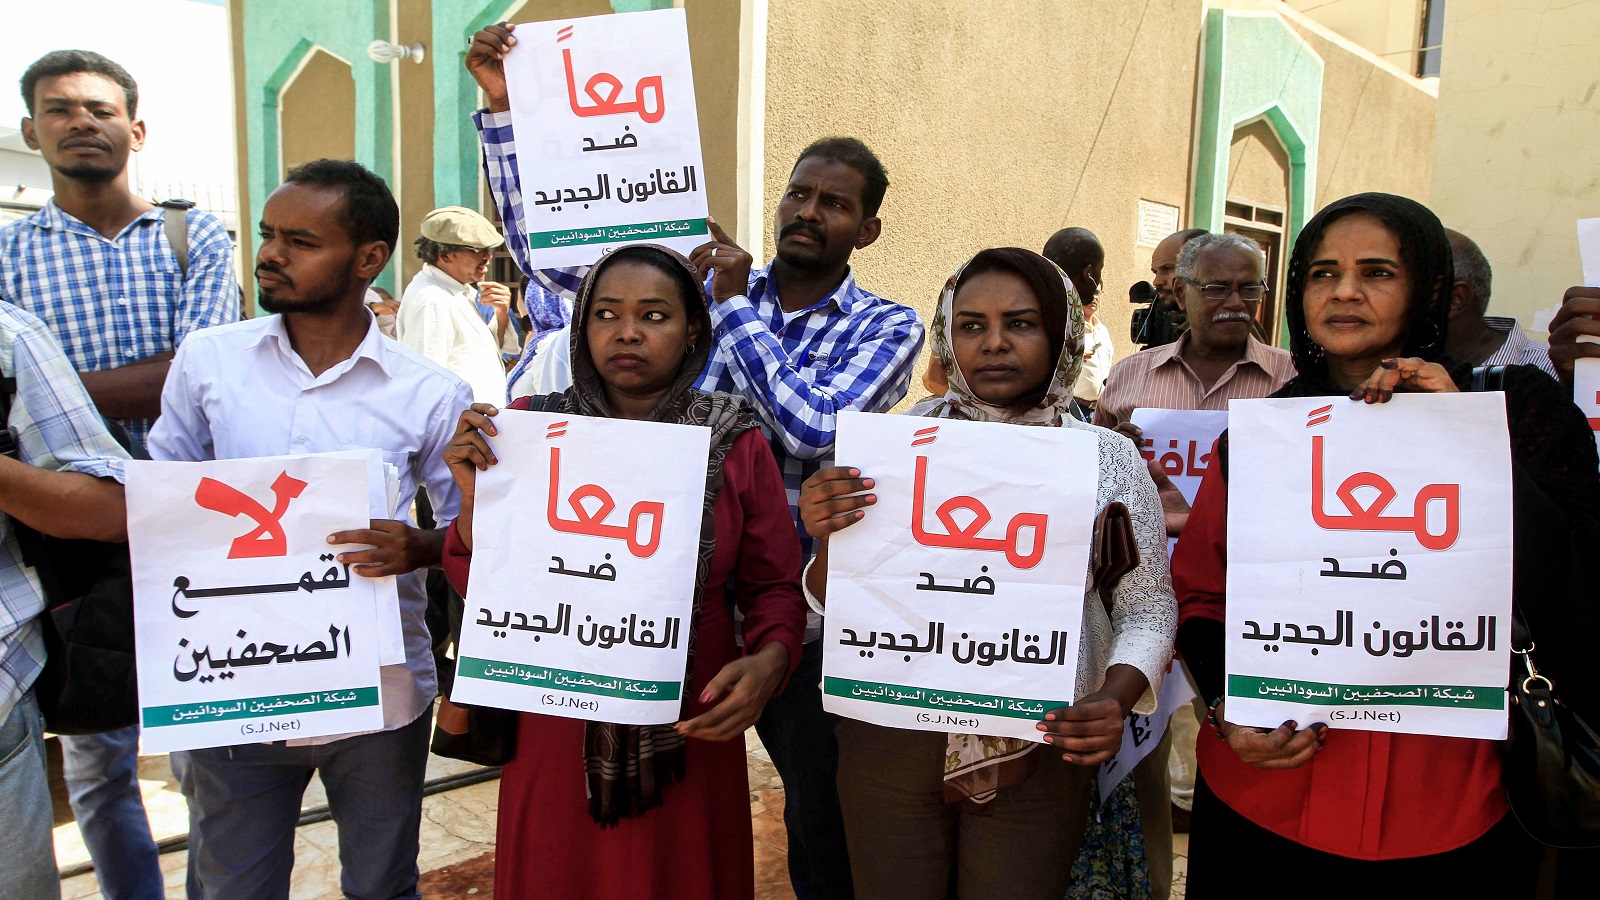 إطلاق سراح مراسلي "رويترز" و"فرانس برس" في السودان